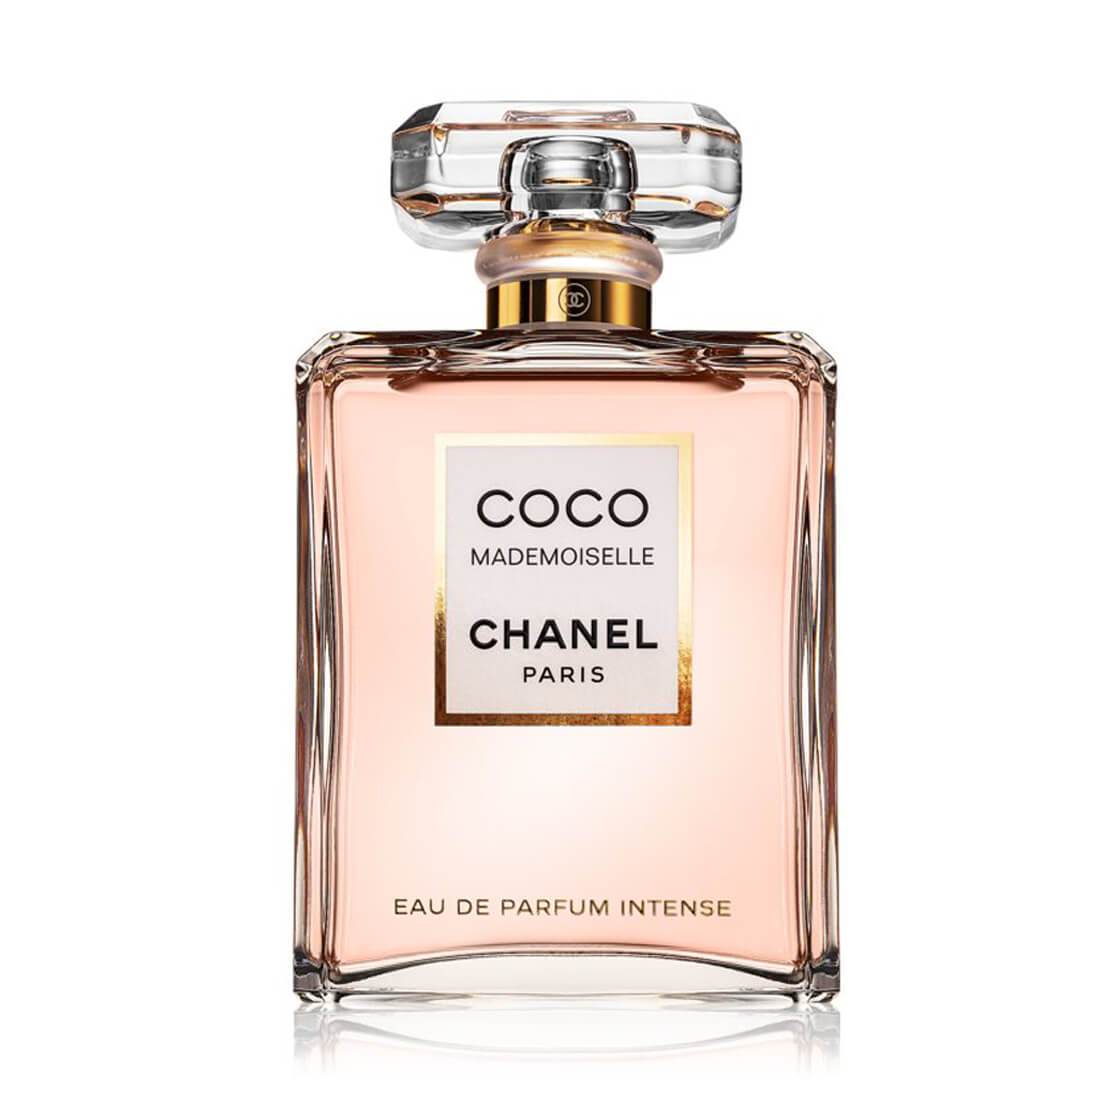 CHANEL Coco Mademoiselle Intense Eau De Parfum 50ml